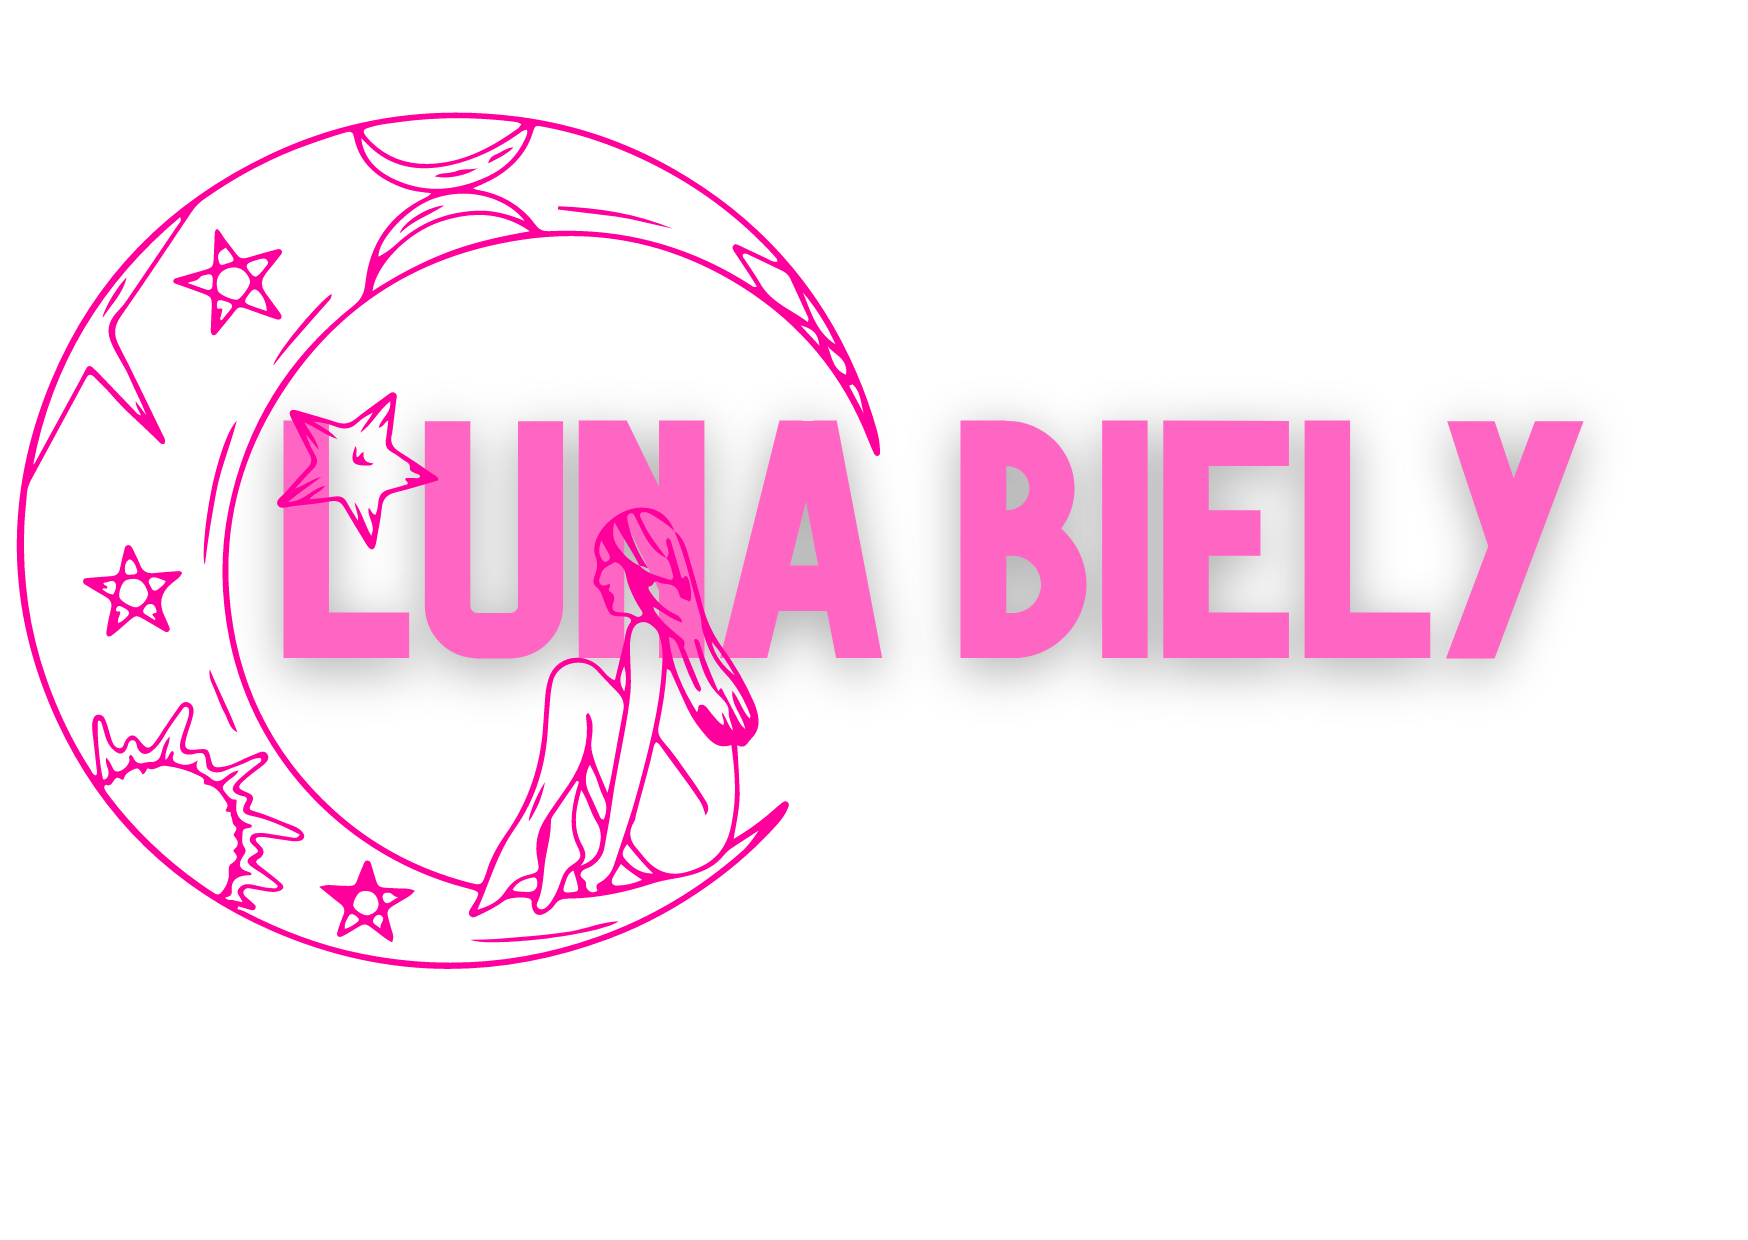 LunaBiely 🌜 image: 1